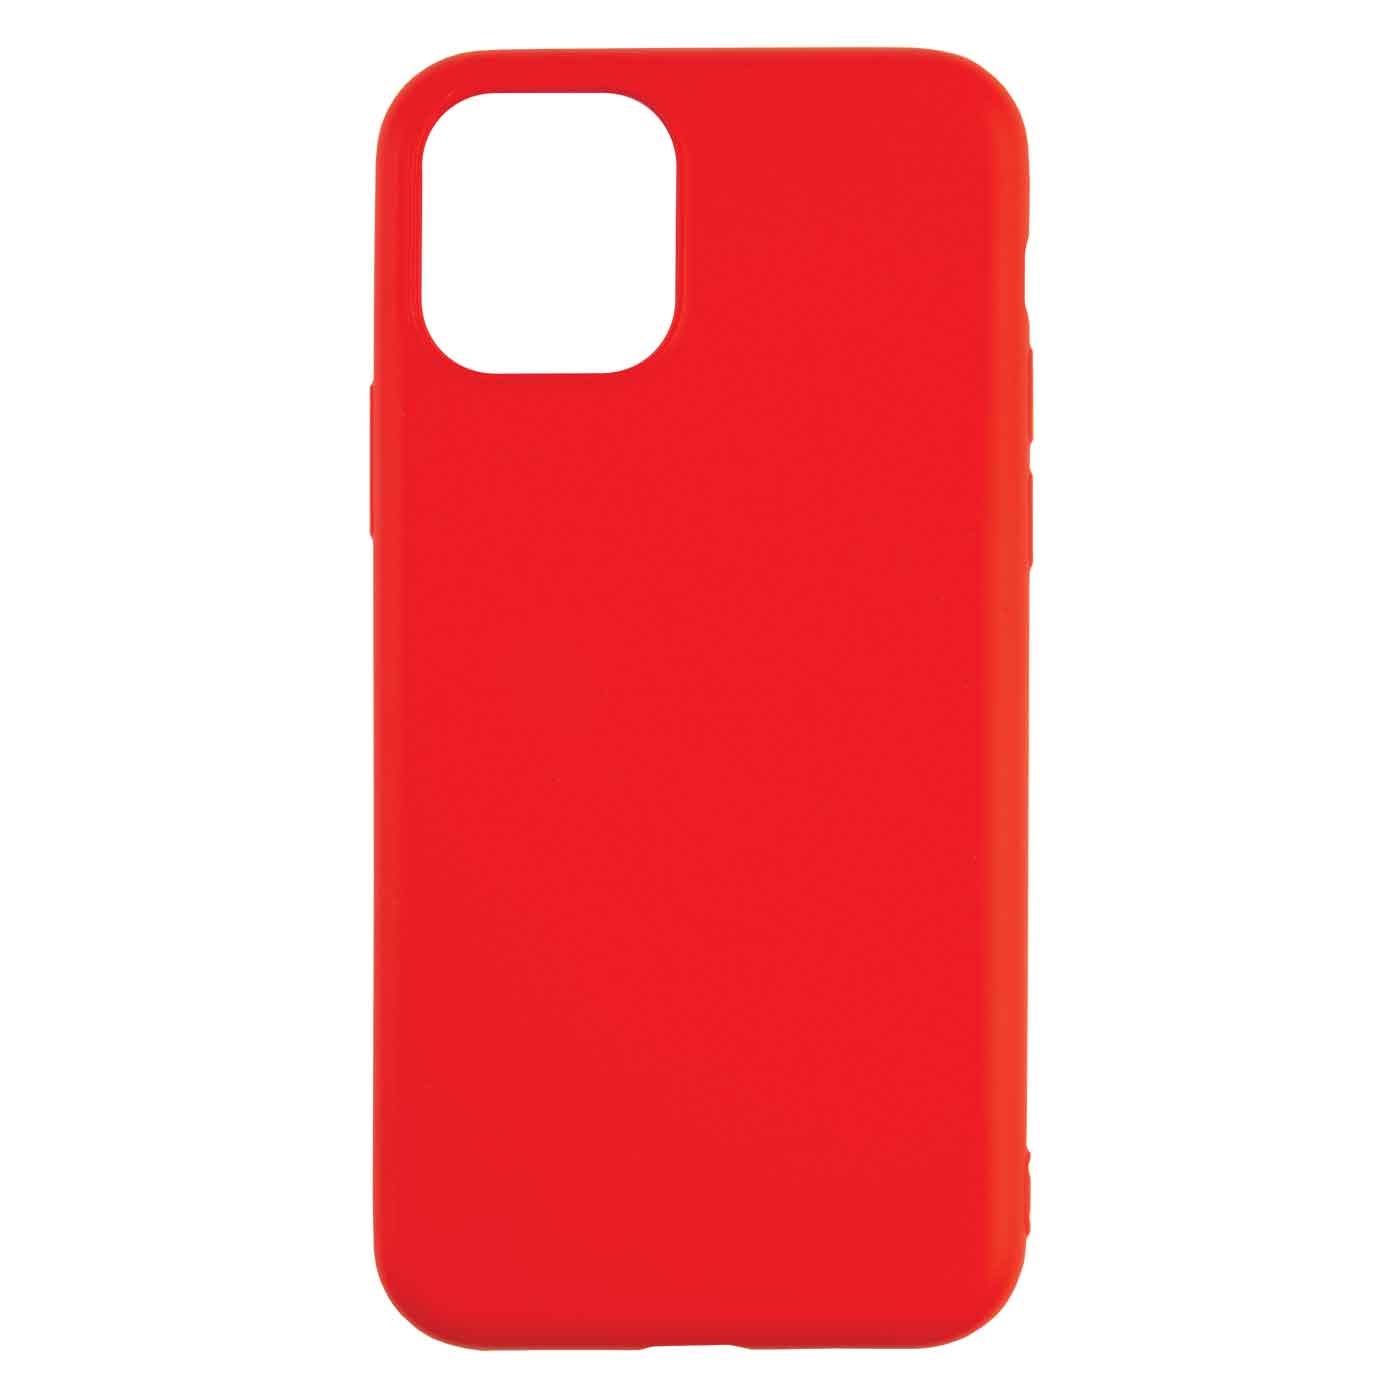 Чехол силиконовый Red Line для iPhone 14 Pro Max, с микрофиброй, Red чехол силиконовый red line для iphone 14 pro max с микрофиброй blue fog ут000032572